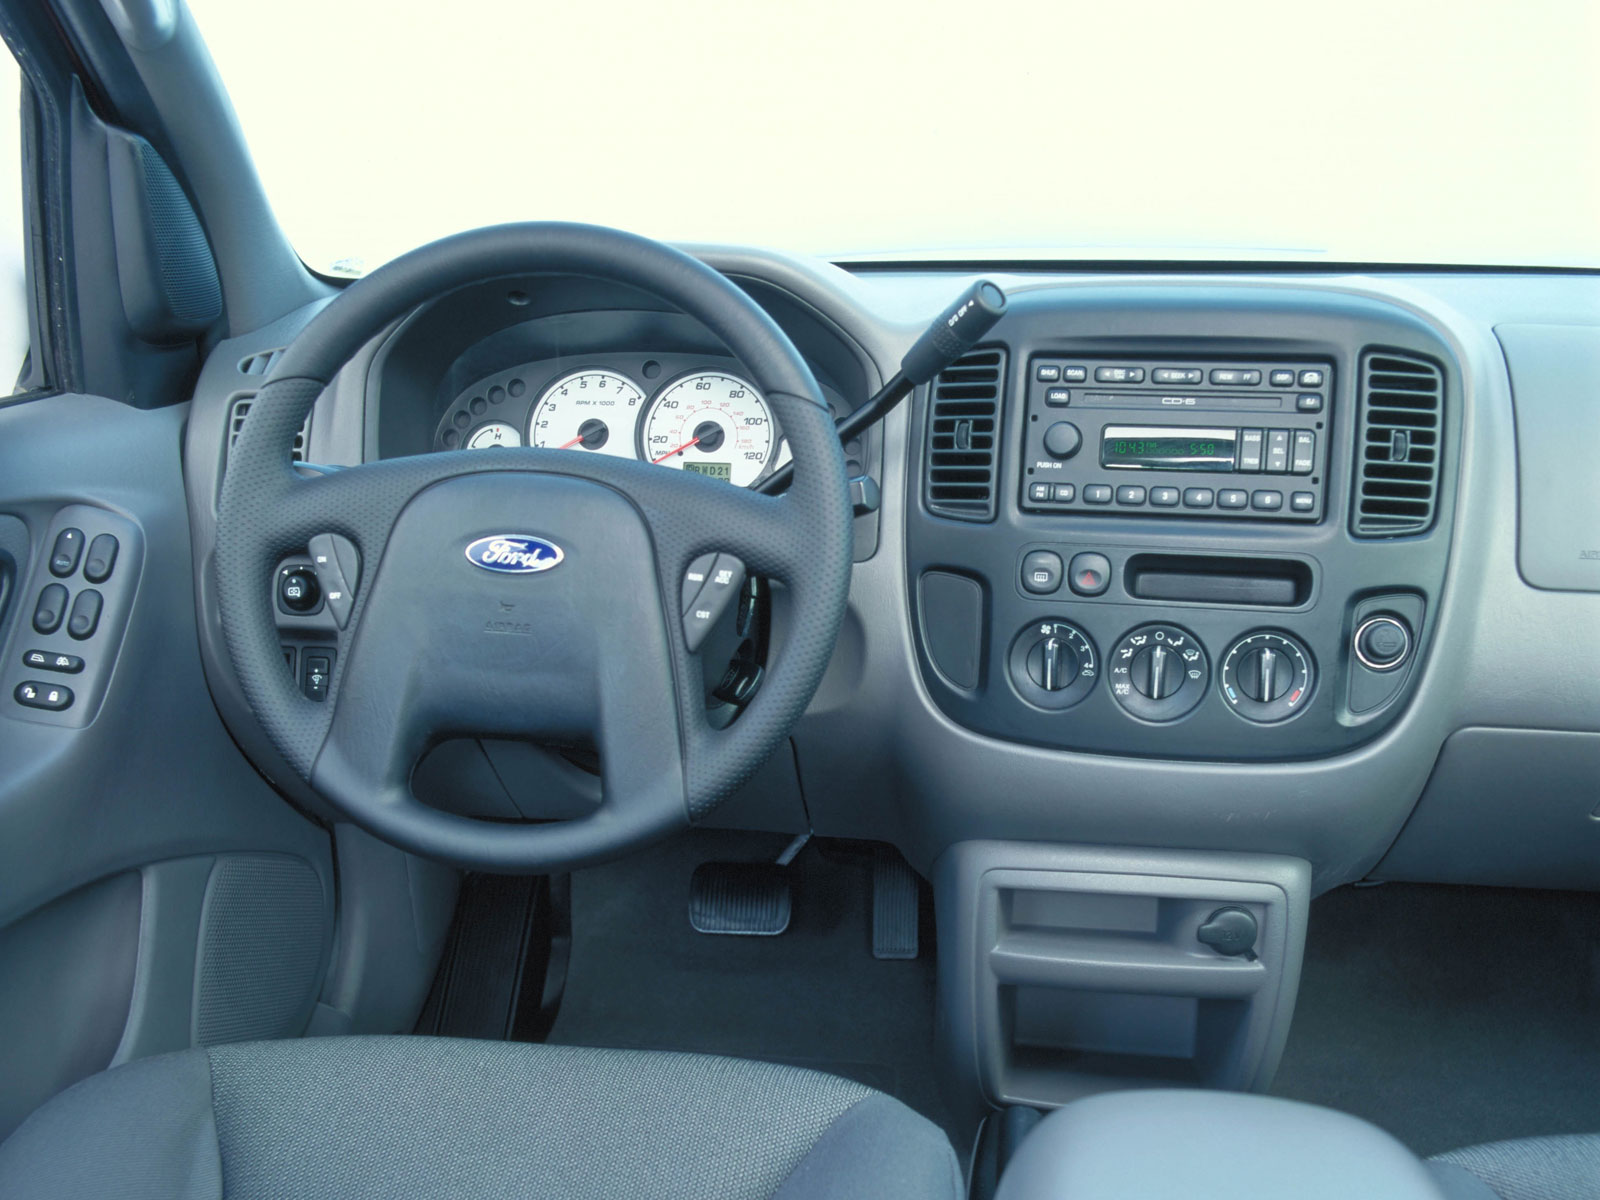 Ford Explorer (Форд Эксплорер) - Продажа, Цены, Отзывы ...